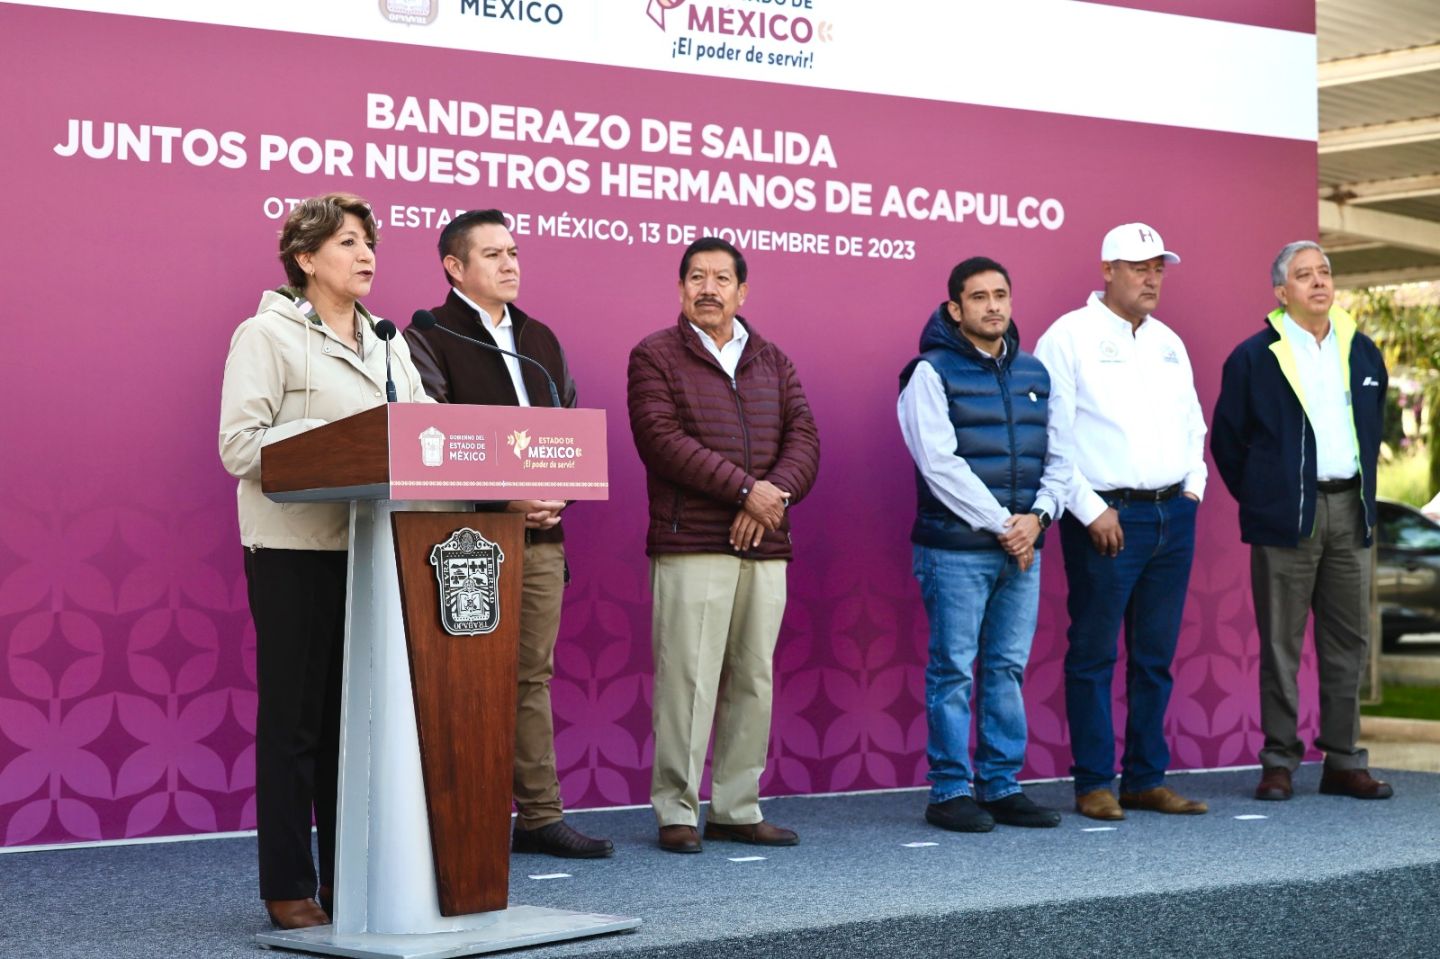 La Gobernadora Delfina Gómez destaca el humanismo mexiquense y da banderazo de salida a 60 camiones para realizar labores de limpieza en Acapulco, Guerrero